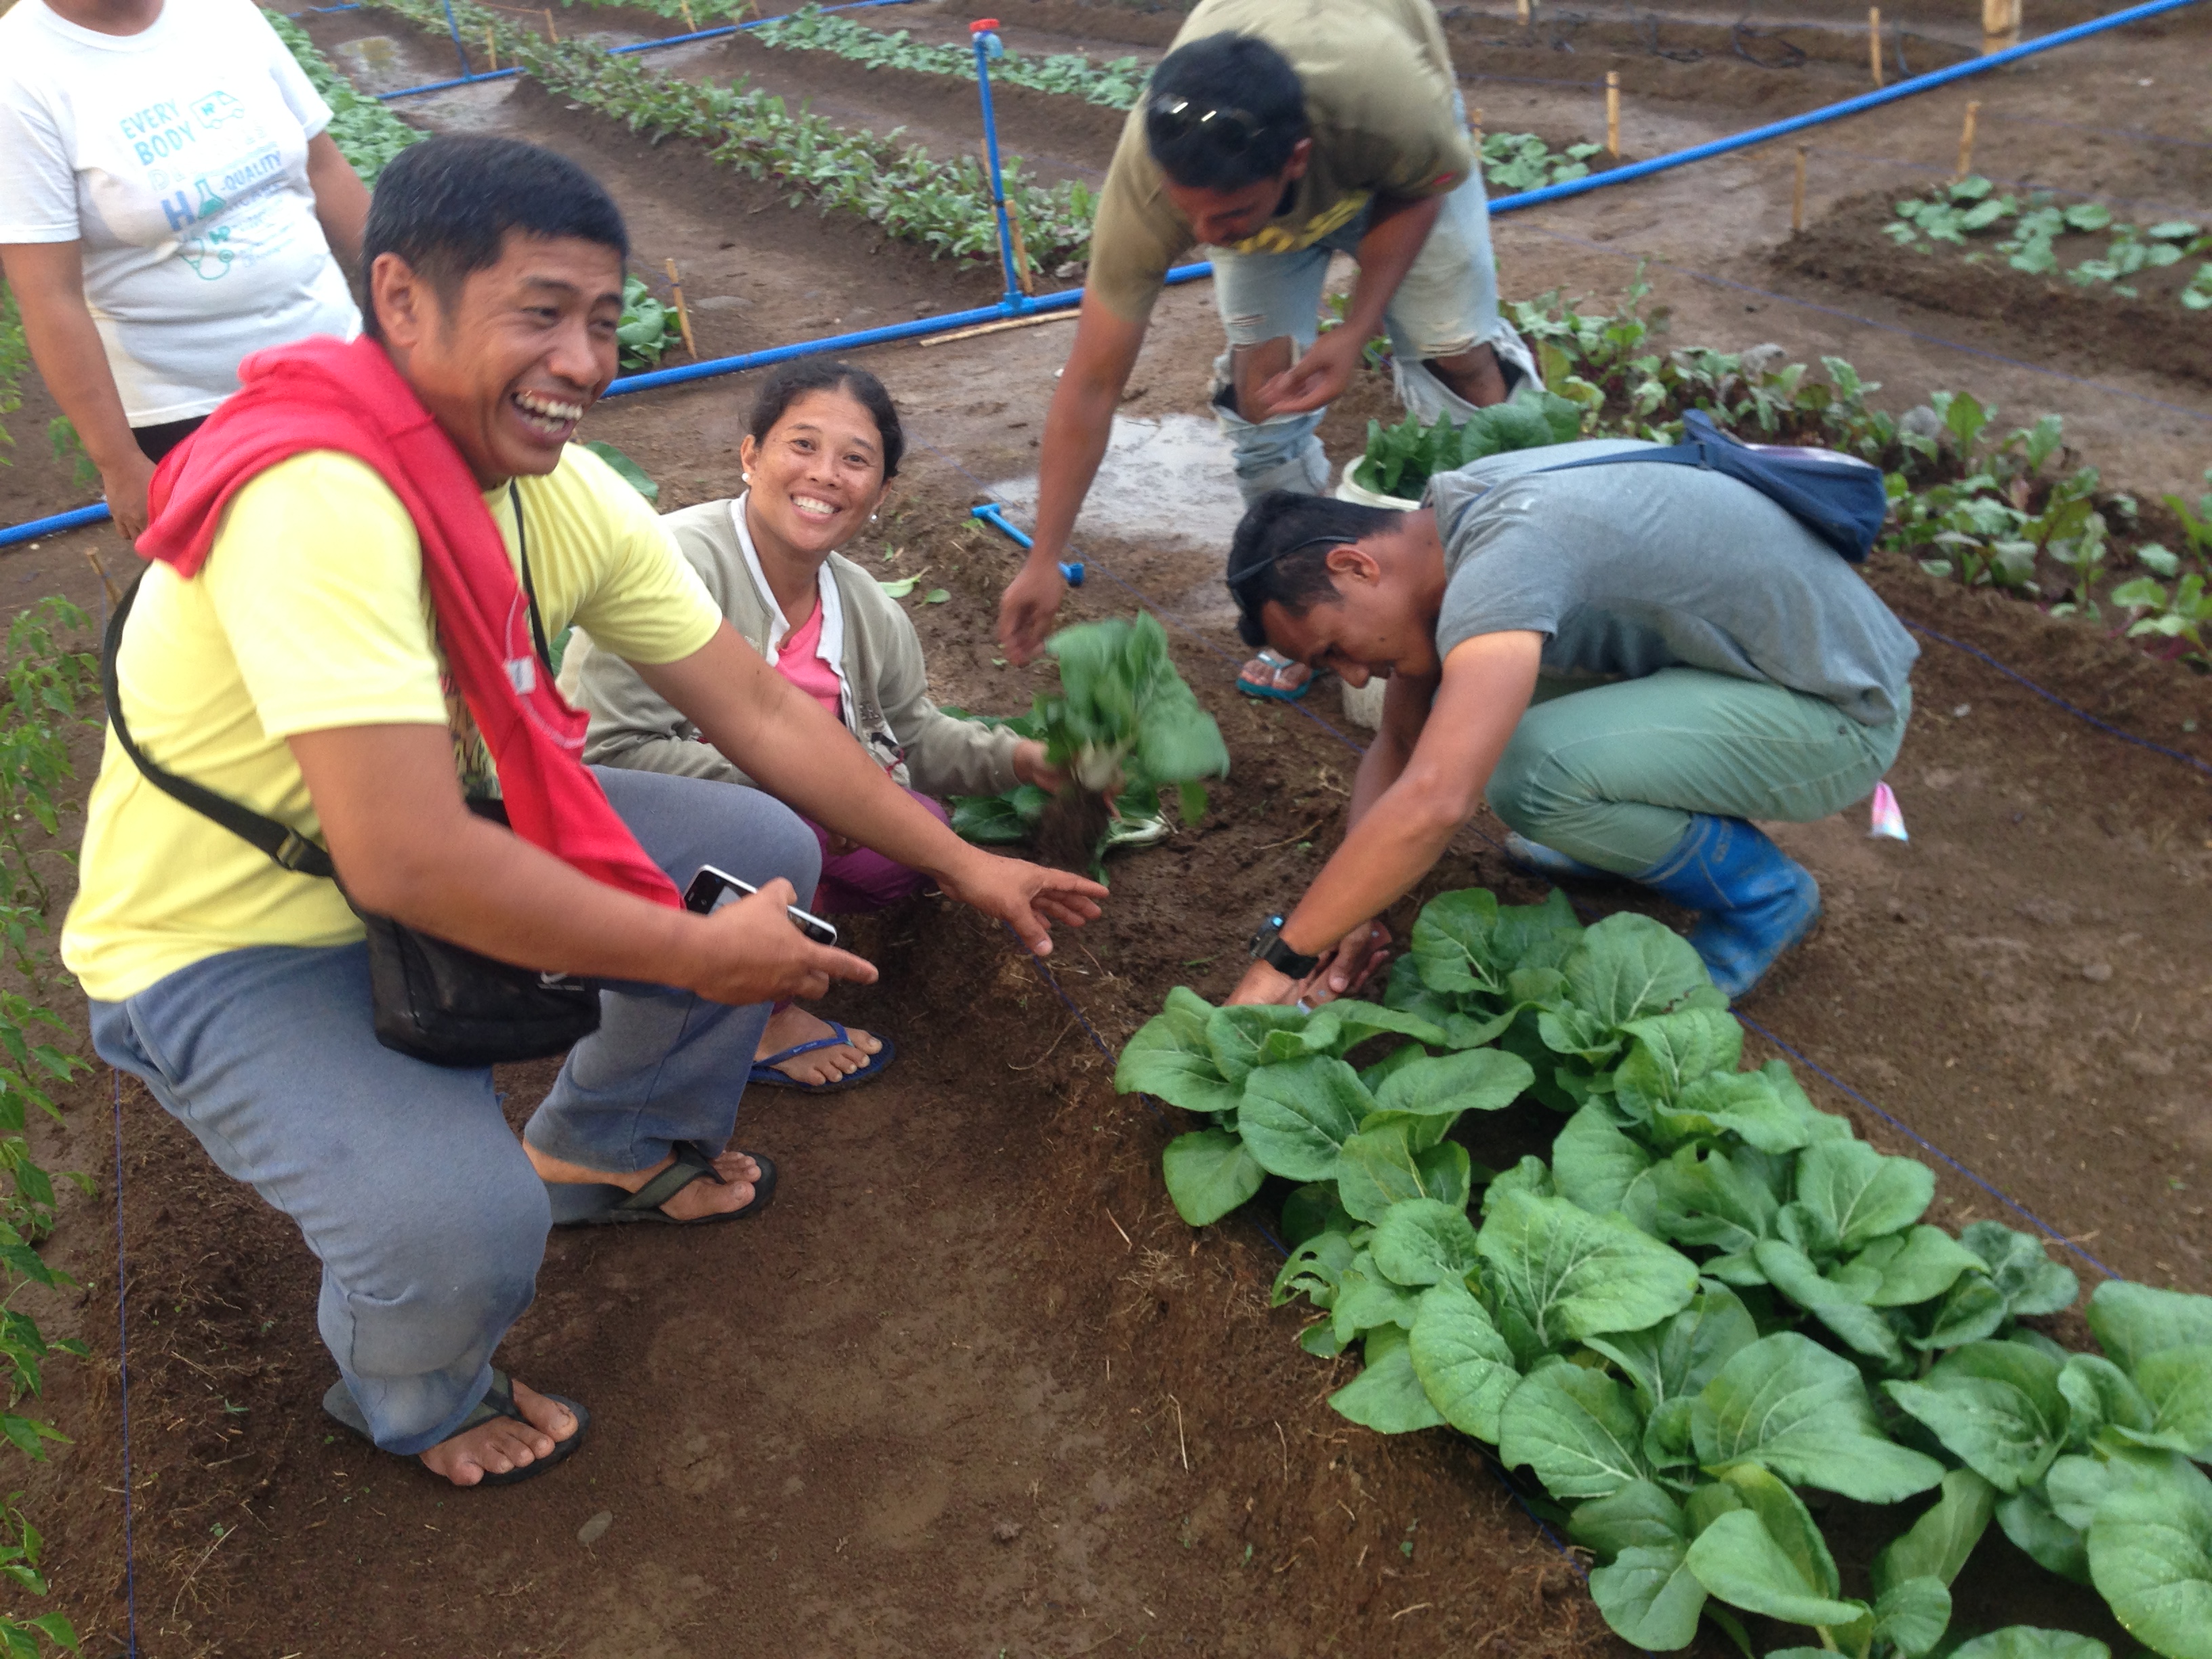 Philippines-mittleider garden people planting0